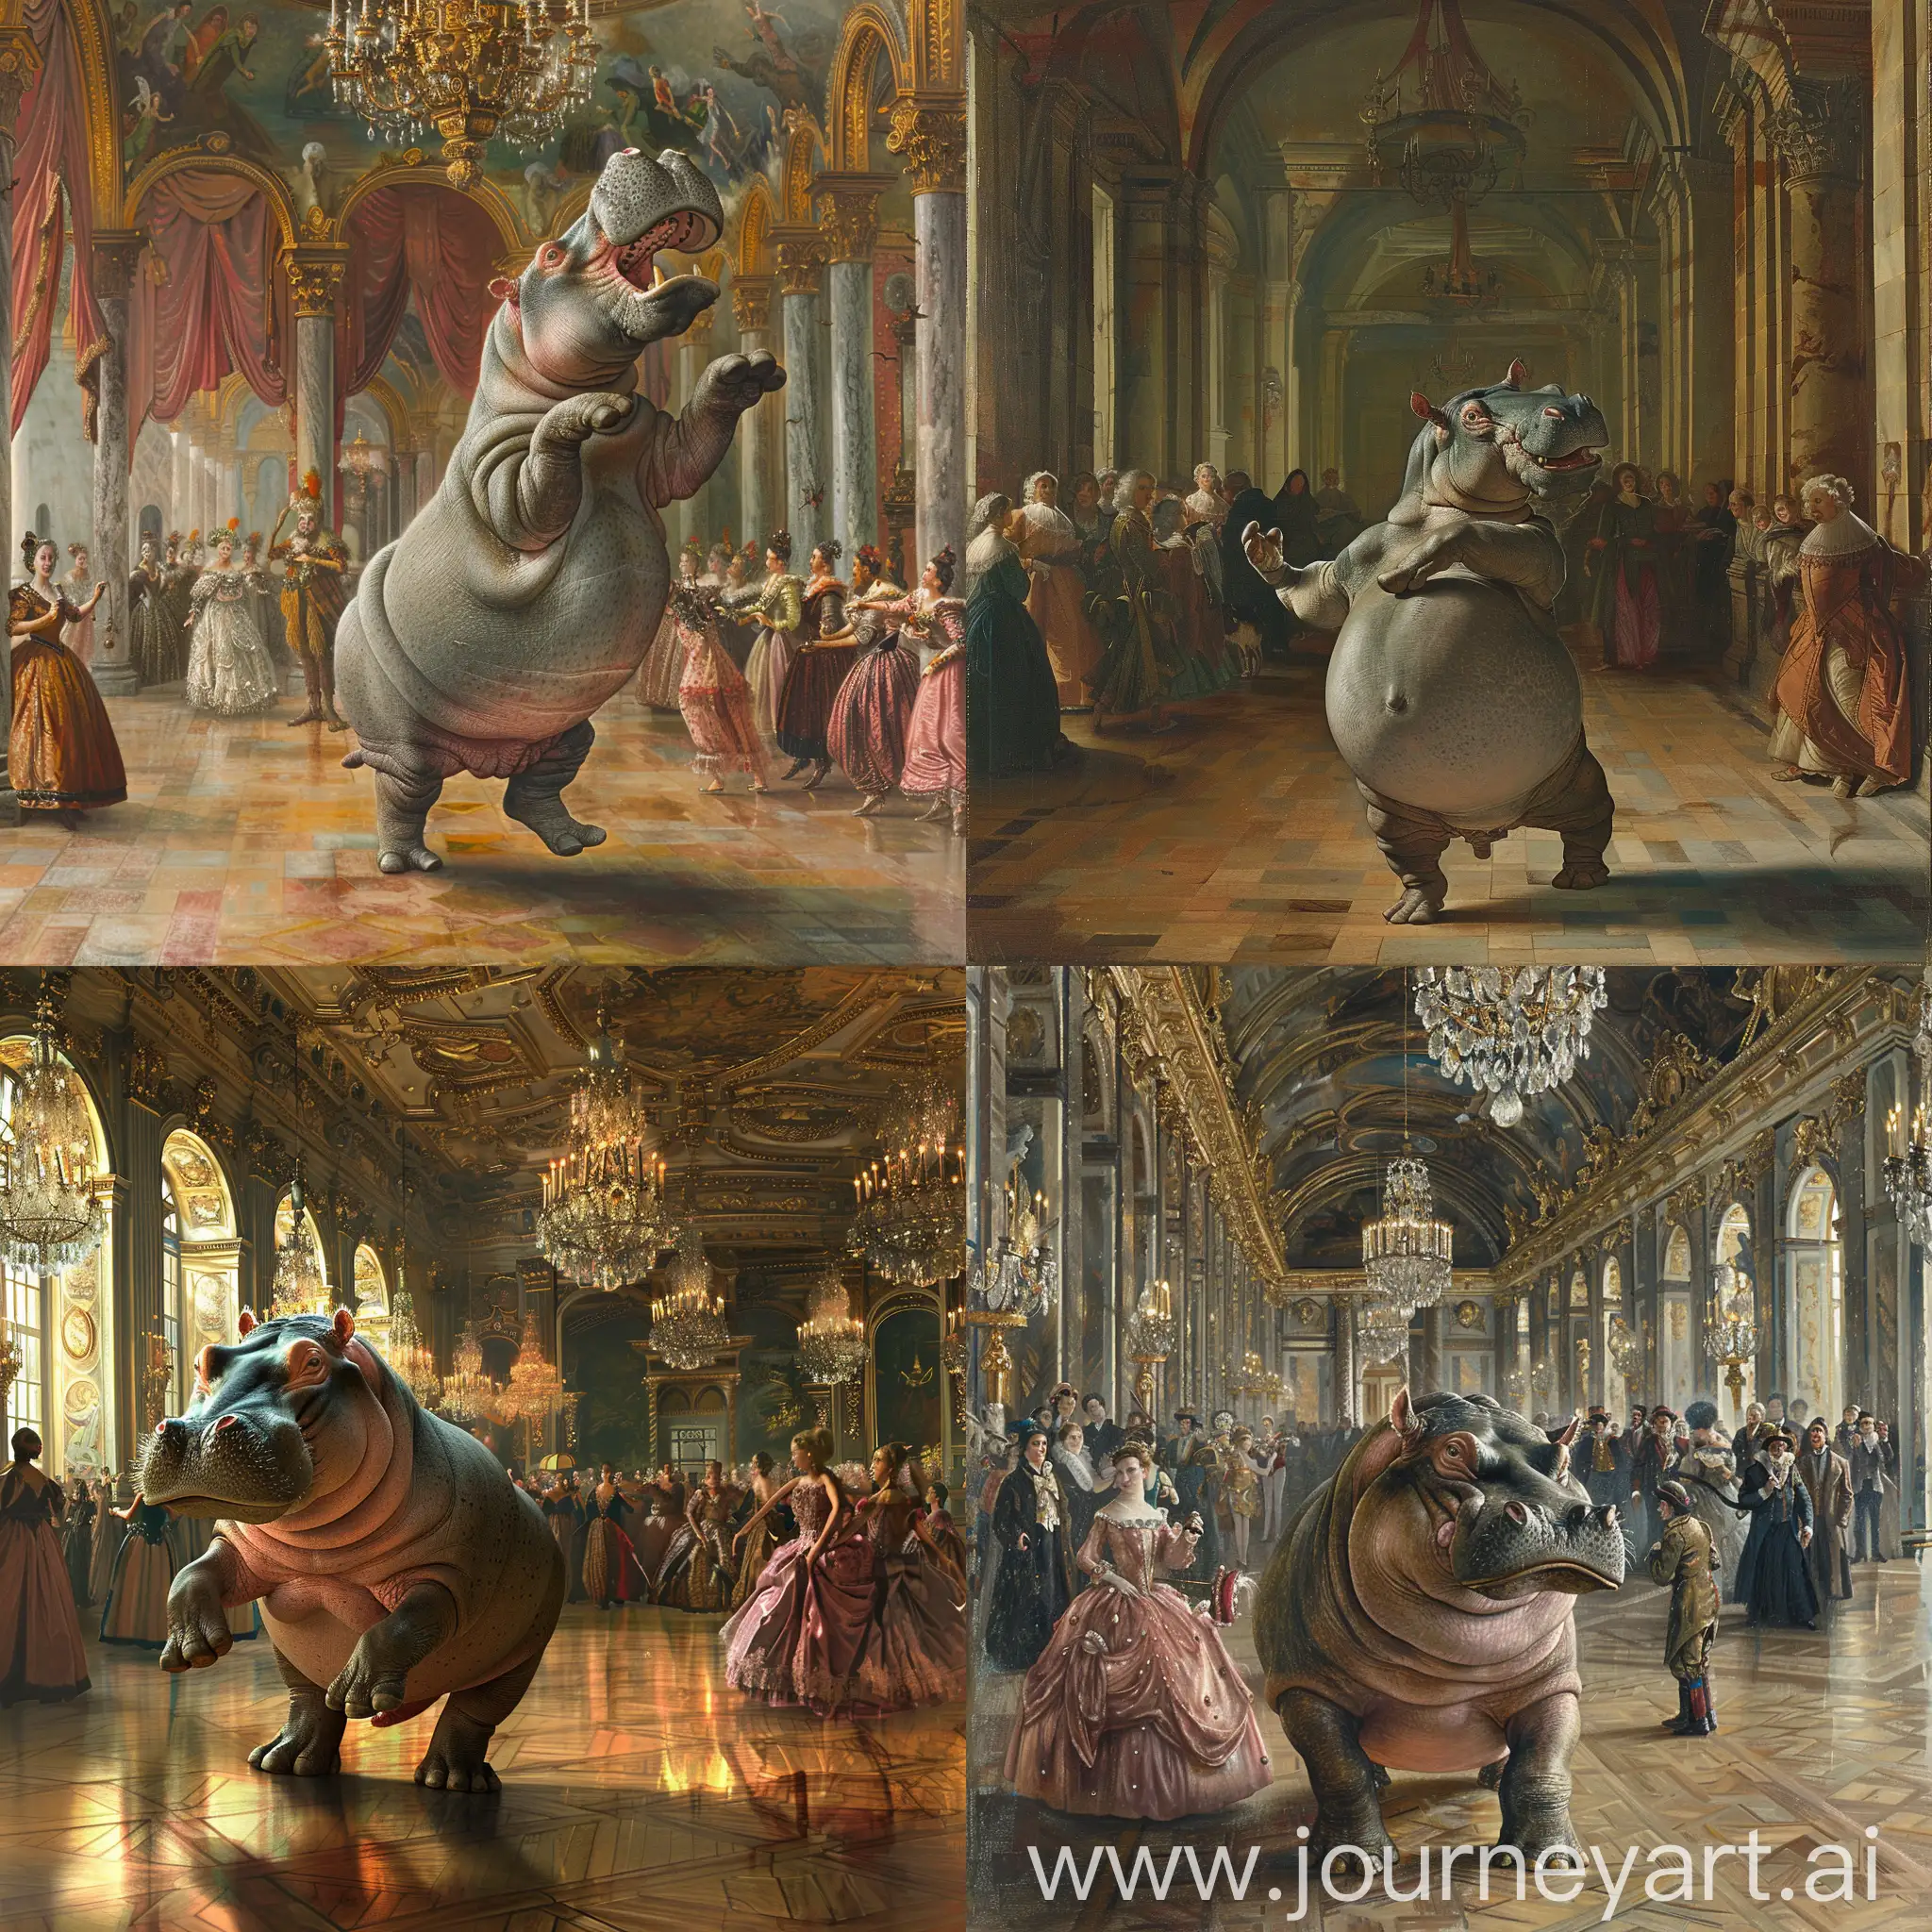 Graceful-Hippopotamus-Ballet-Dance-in-Opulent-Baroque-Hall